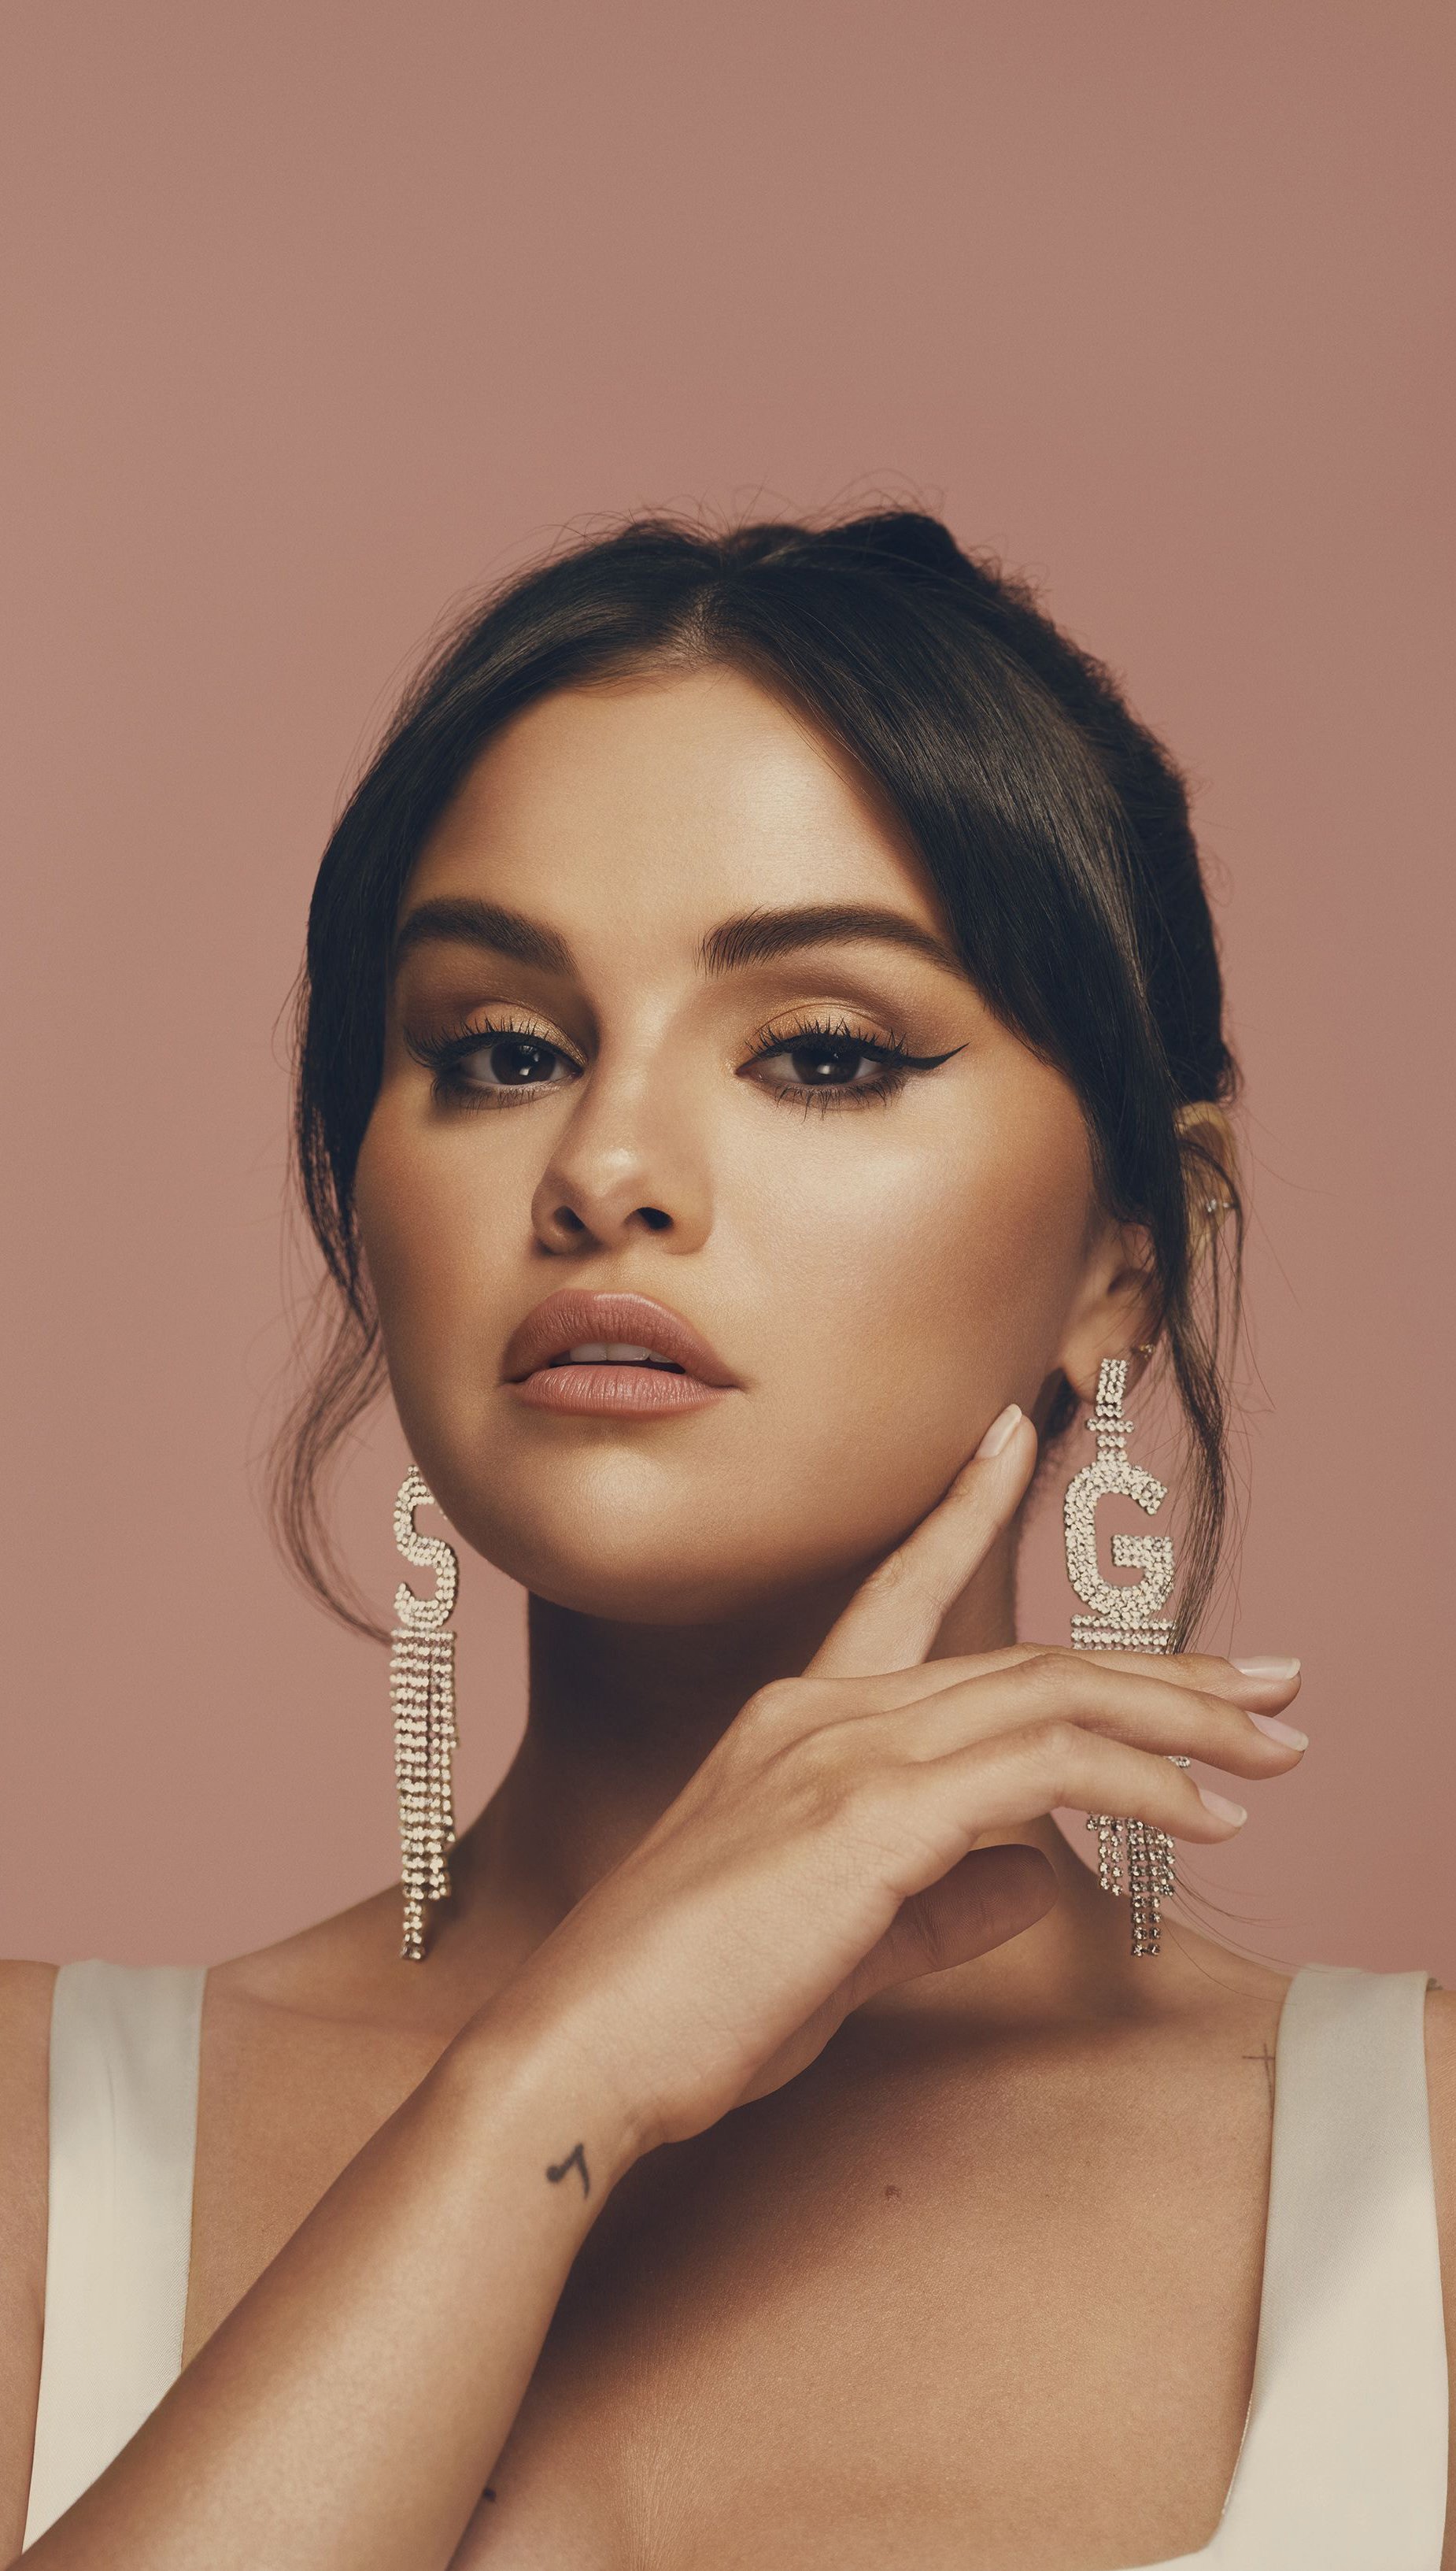 Fondos de pantalla Selena Gomez Rare Beauty Vertical